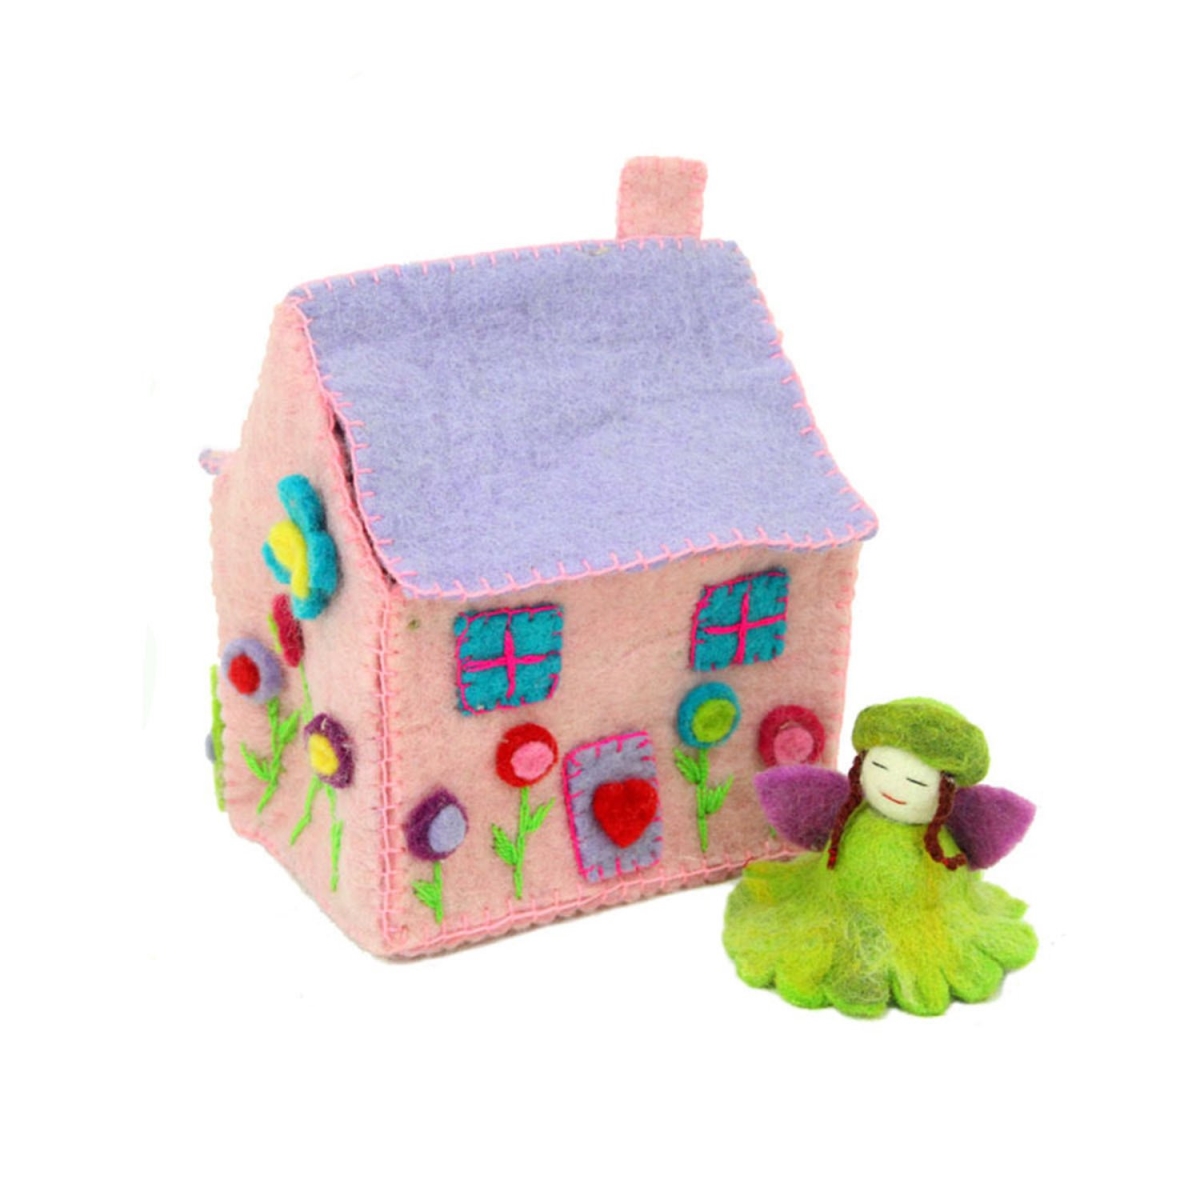 Glg2305-596030 Handmade & Fair Trade Felted Tiny Dream House